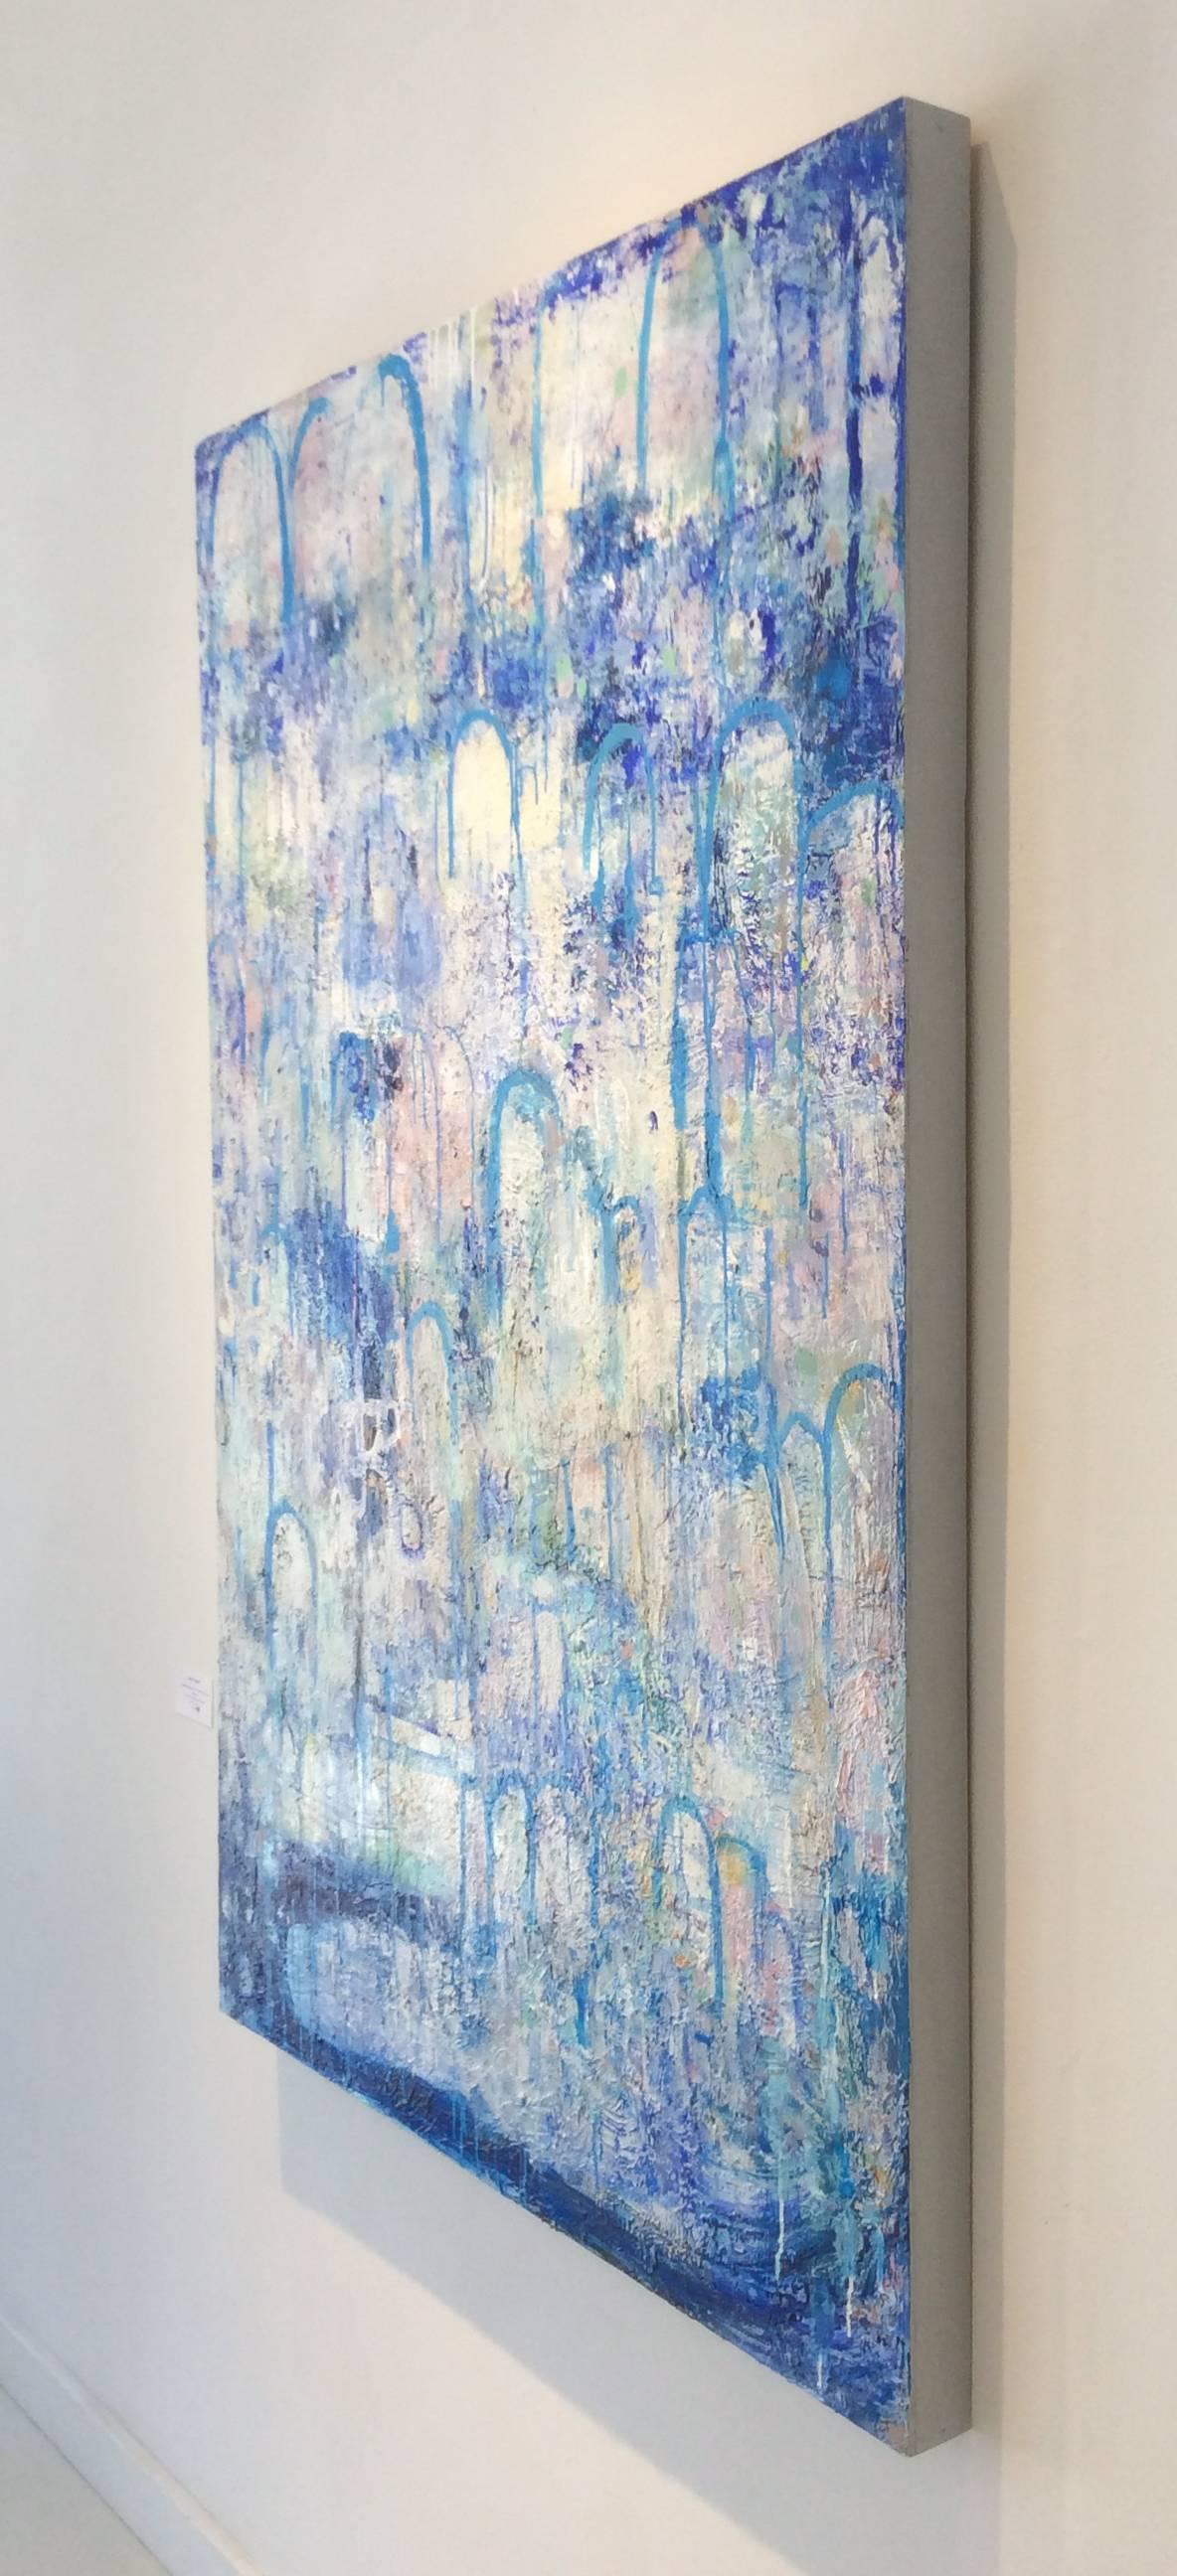 Hydrology (peinture expressionniste abstraite verticale contemporaine, bleue et blanche) - Contemporain Painting par Ragellah Rourke